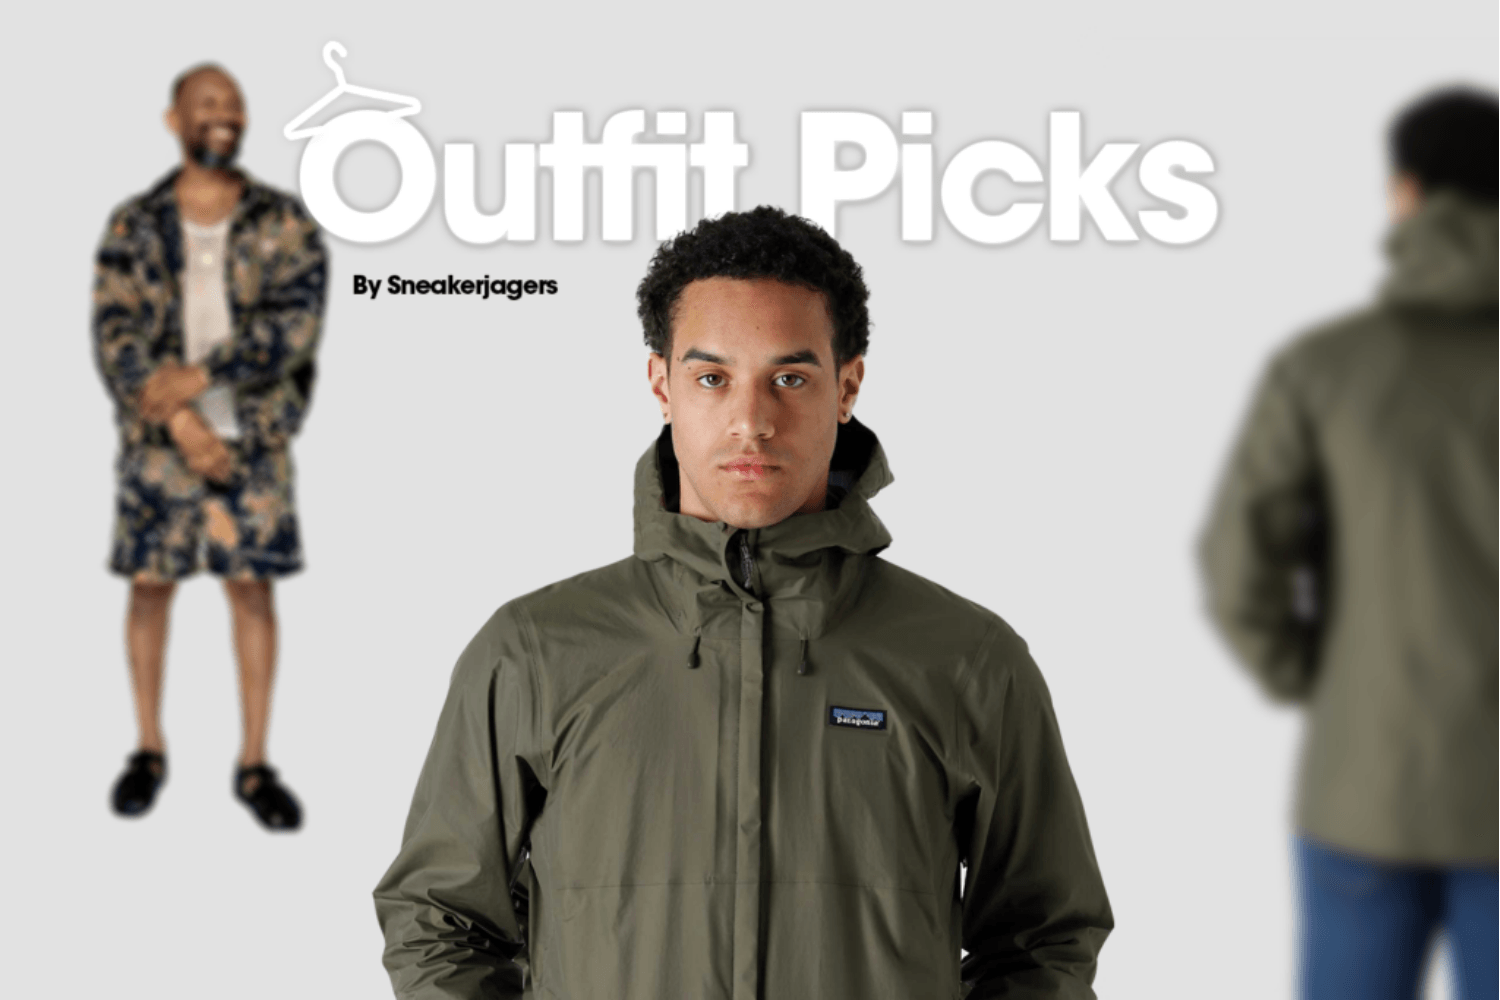 Outfit Picks by Sneakerjagers - Week 13